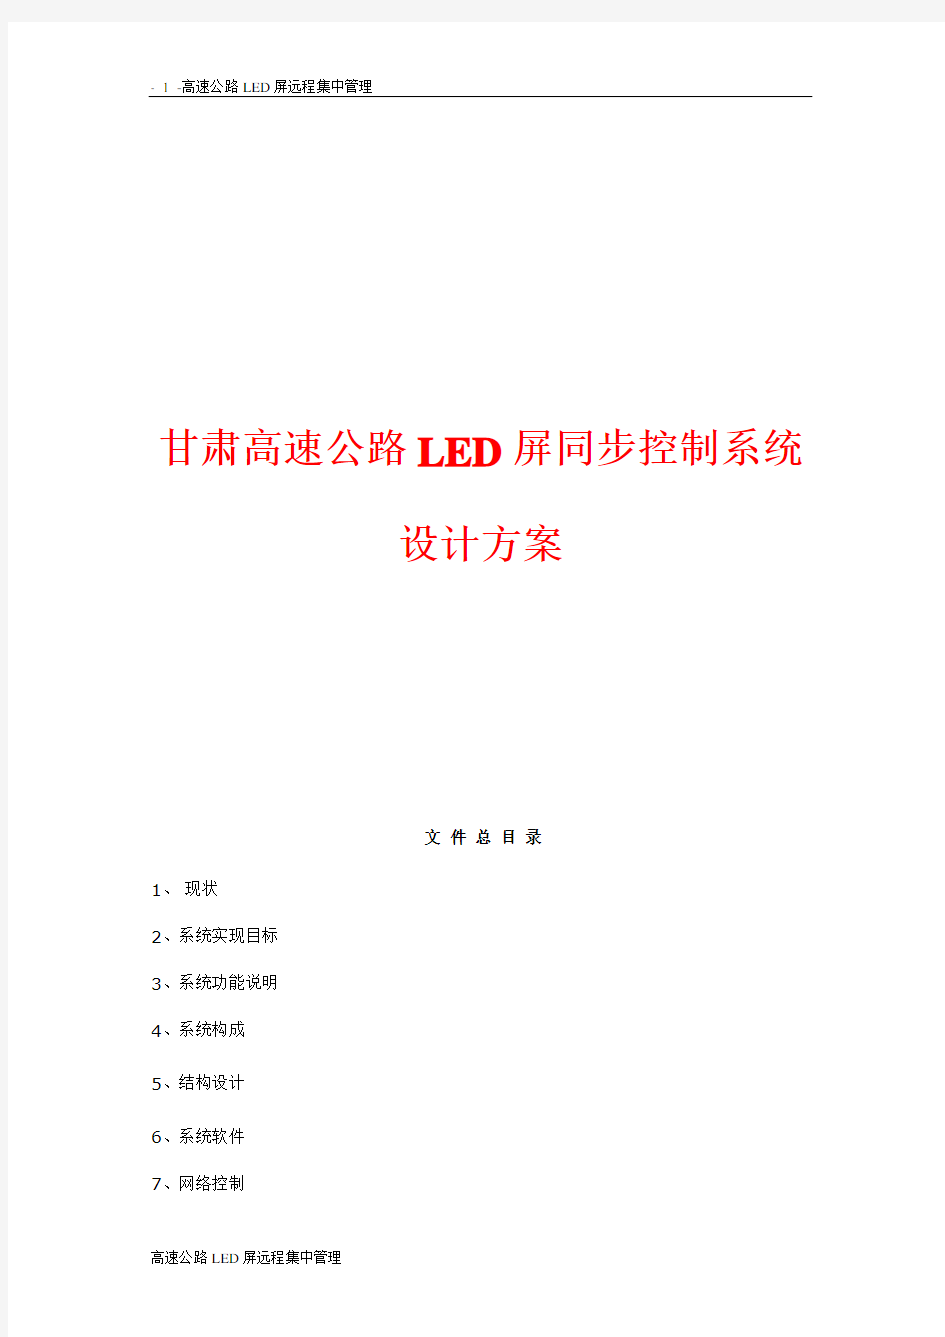 LED电子显示屏系统设计方案